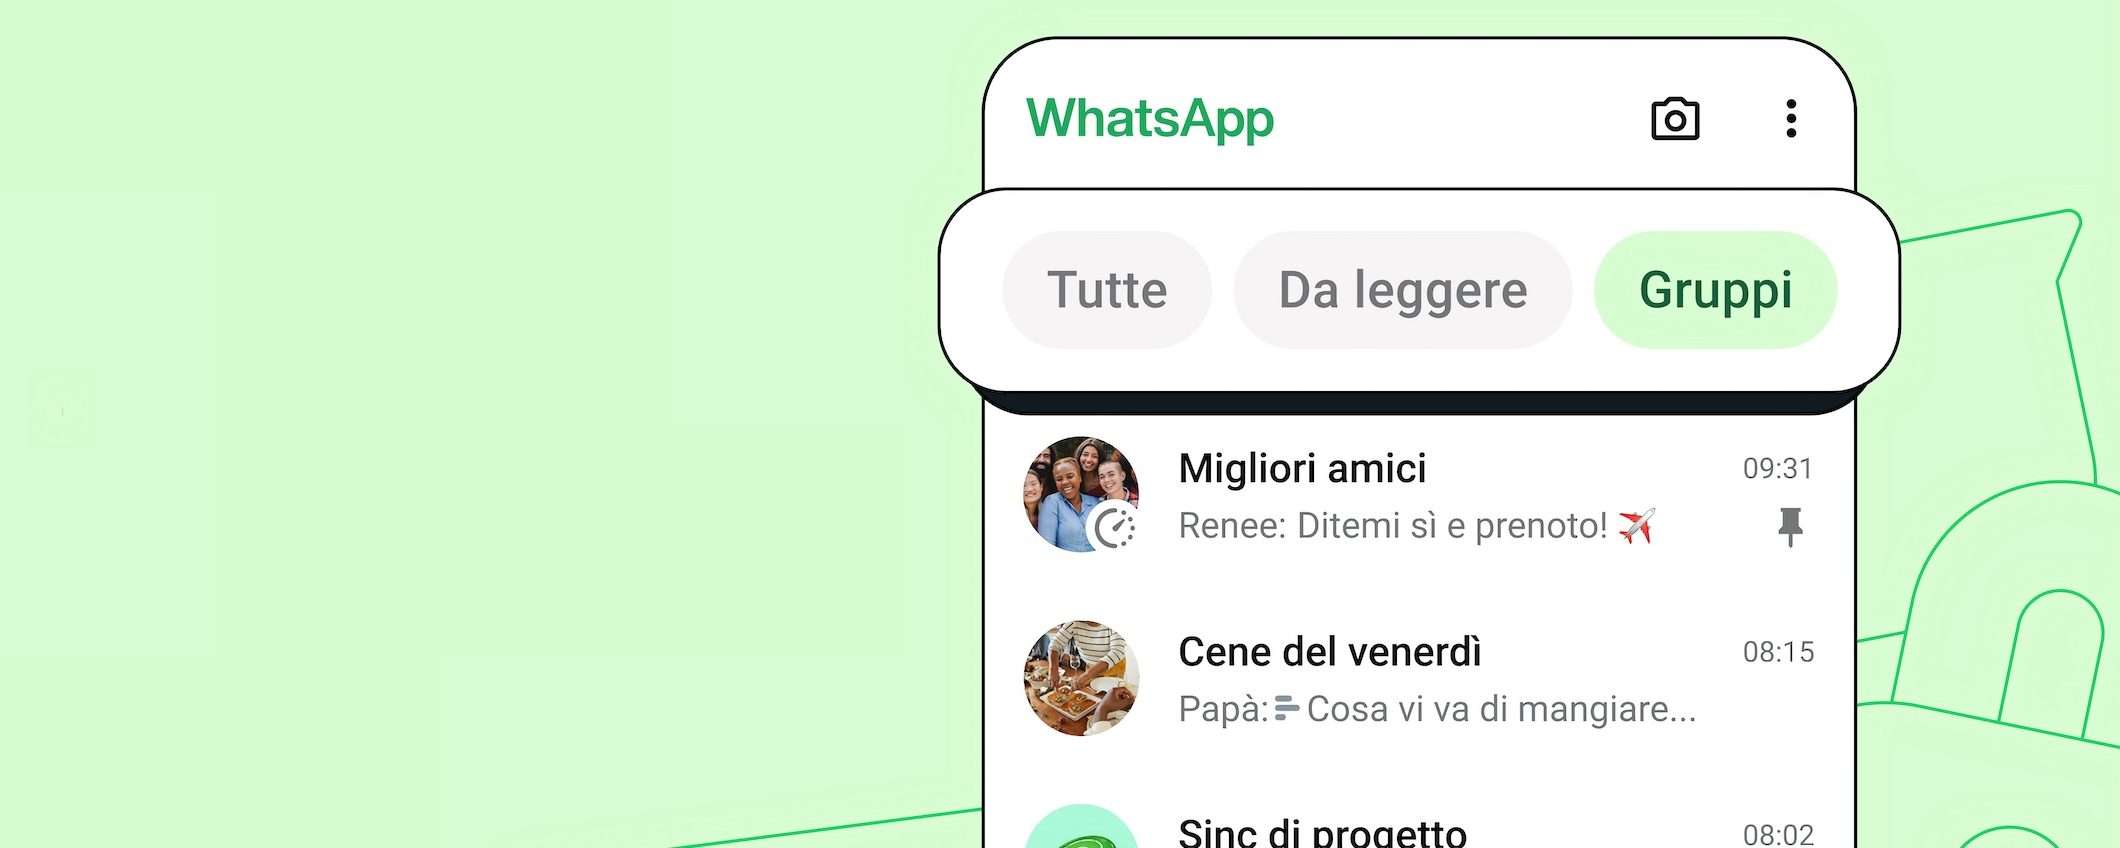 WhatsApp: disponibili i nuovi filtri delle chat